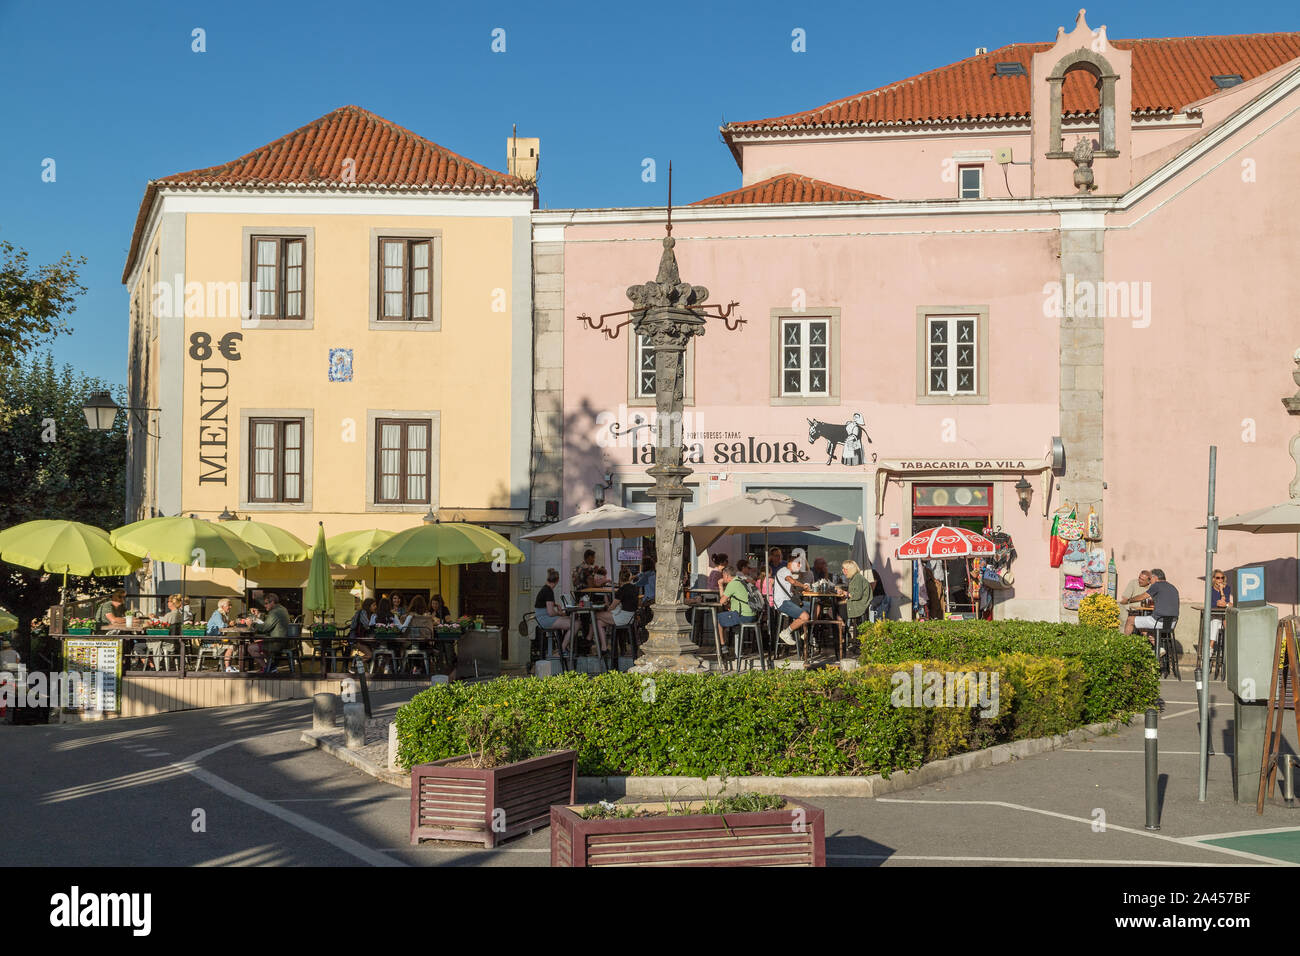 SINTRA, Portogallo - 11AGOSTO 2019: strade in Sintra Portogallo durante il giorno. Il al di fuori di negozi, ristoranti, edifici, così come le persone possono essere Foto Stock